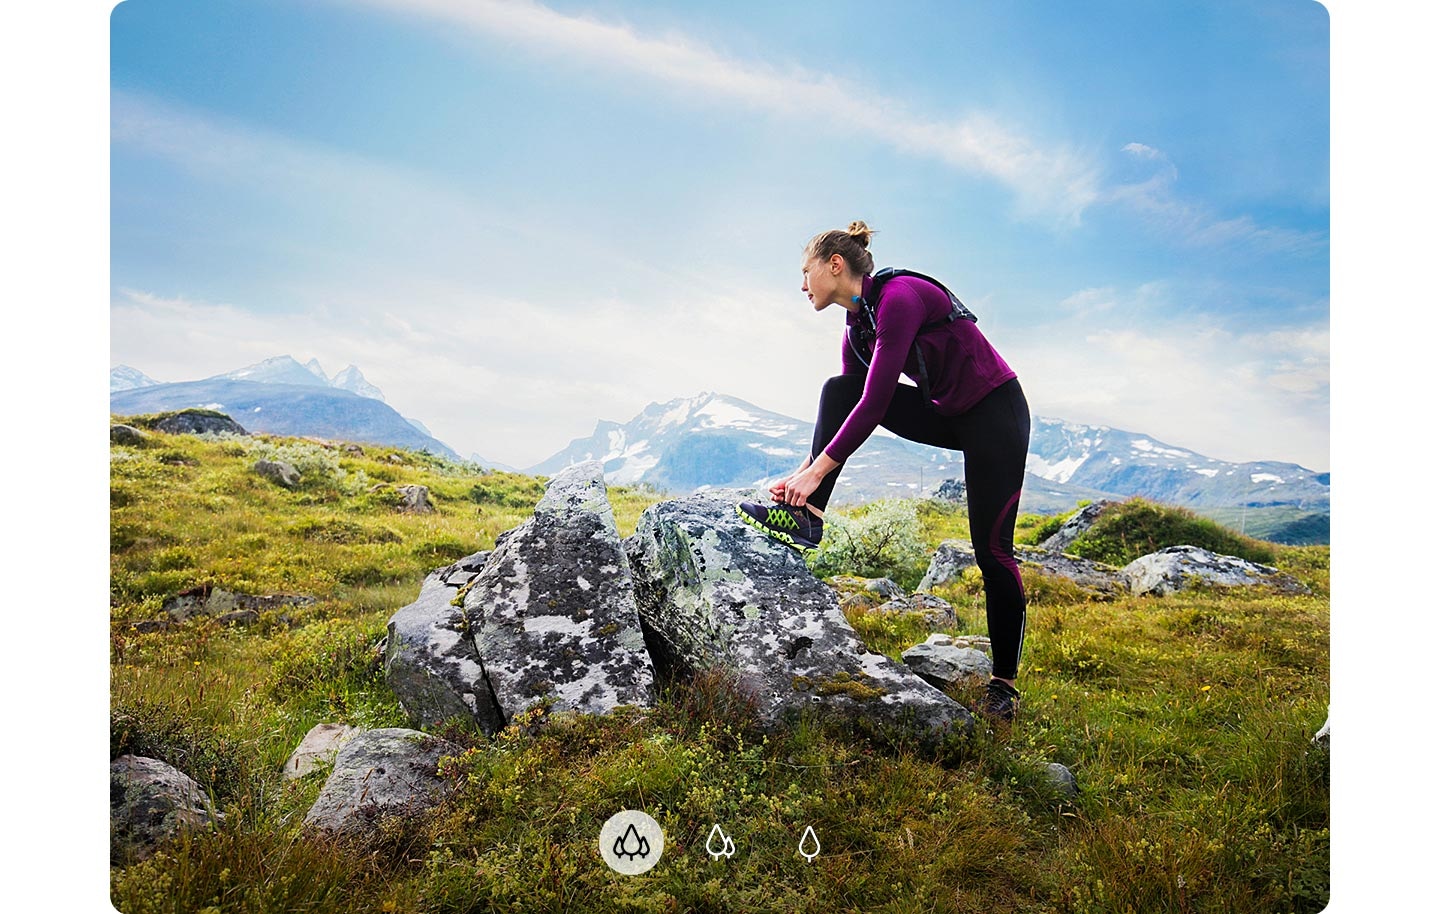 امرأة تحدق على مسافة مع وضع قدمها على صخرة وتظهر الجبال في الخلفية، مما يدل على أن كاميرا الهاتف A72 يمكنها التقاط صورة أوسع مع الكاميرا فائقة الاتساع.